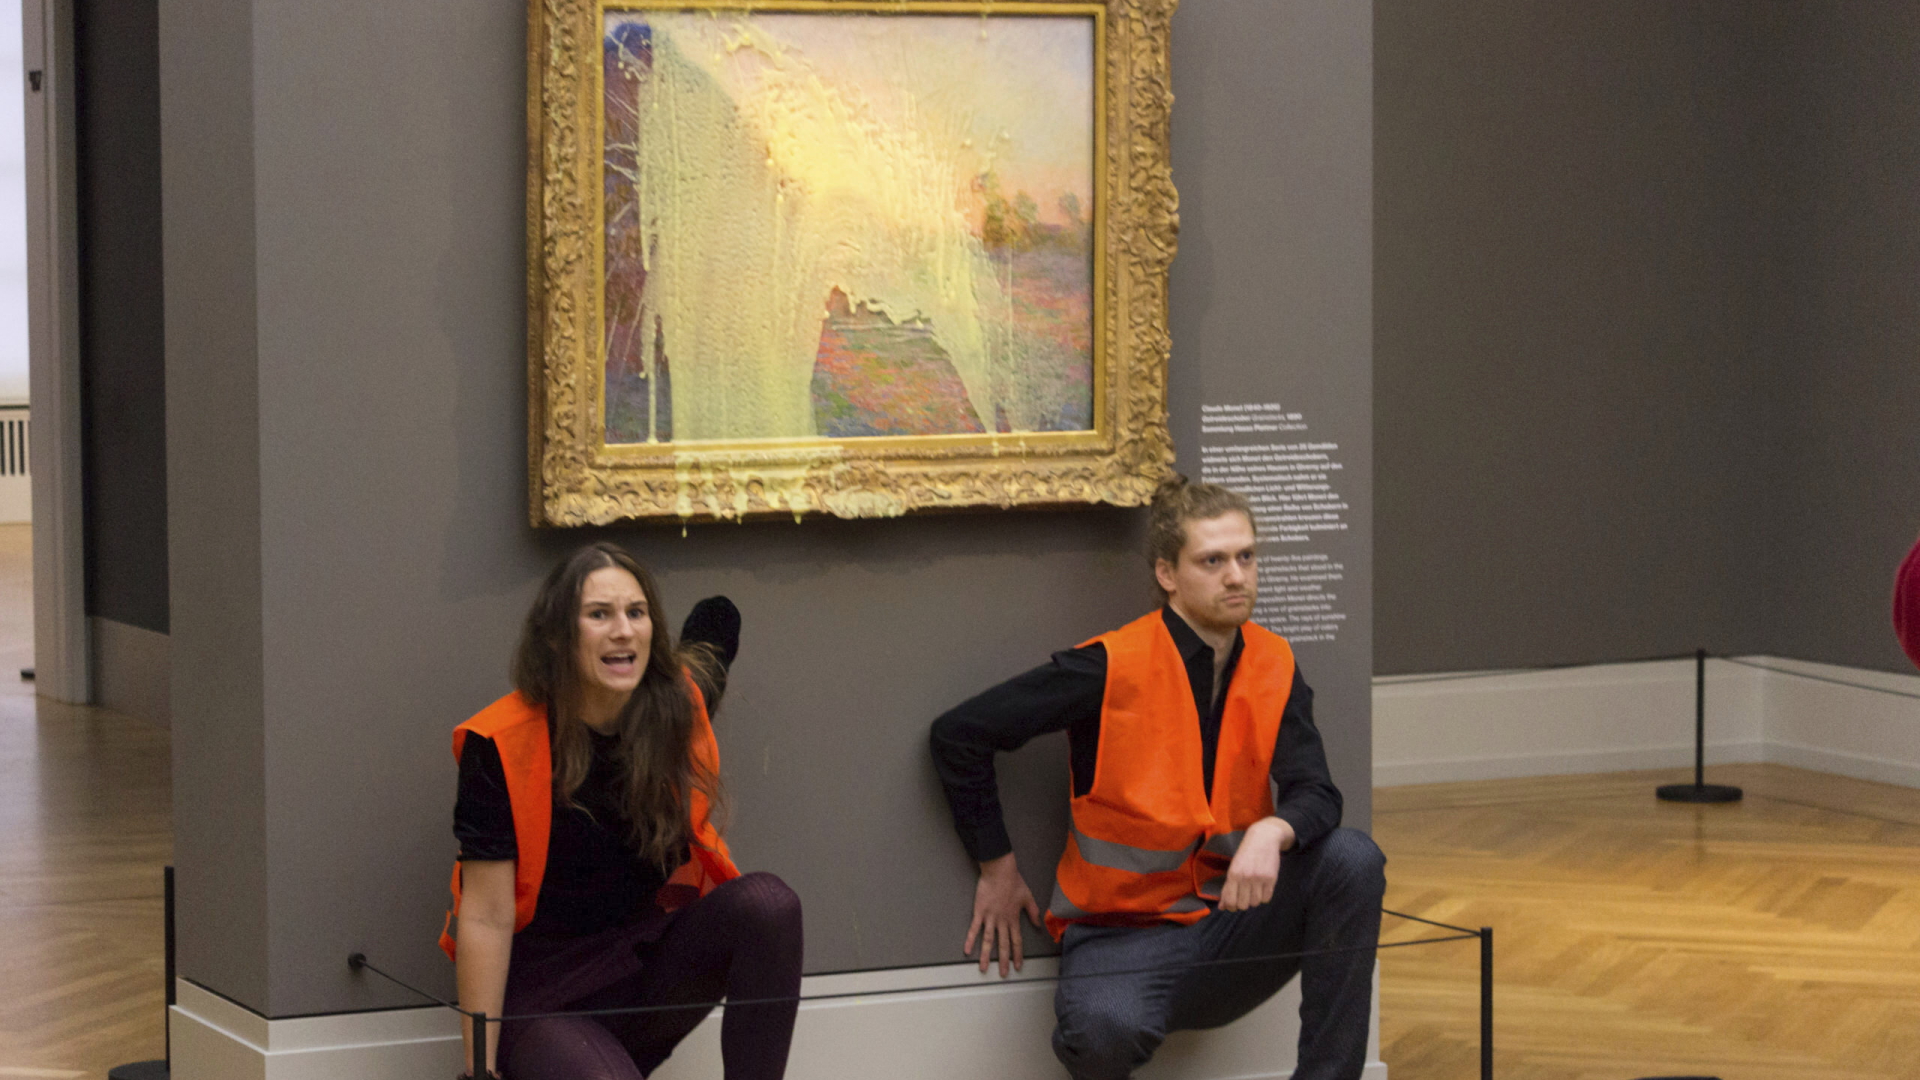 Klimaaktivisten vor beschmierten Monet-Bild im Museum Barberini in Berlin | AP